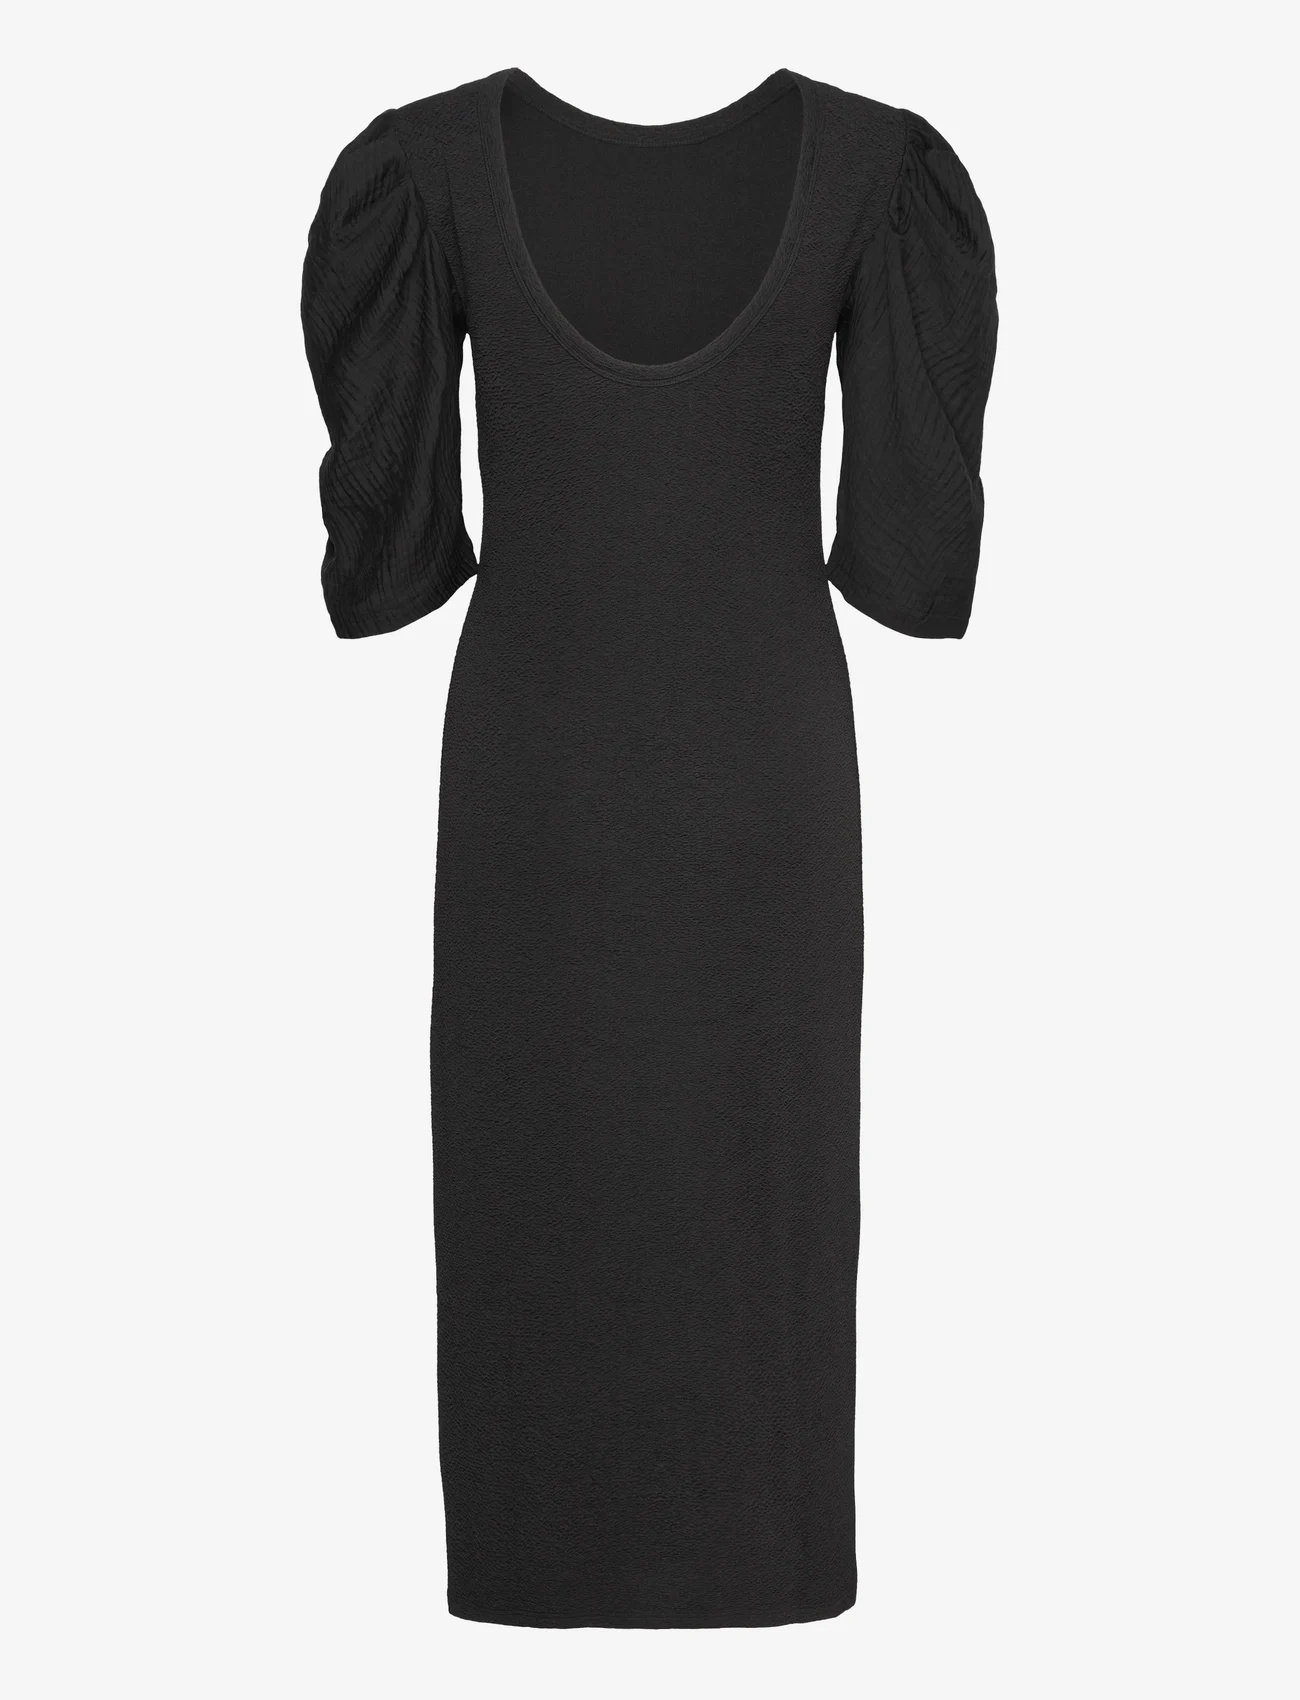 MAUD - Annie Dress - midi dresses - black - 1